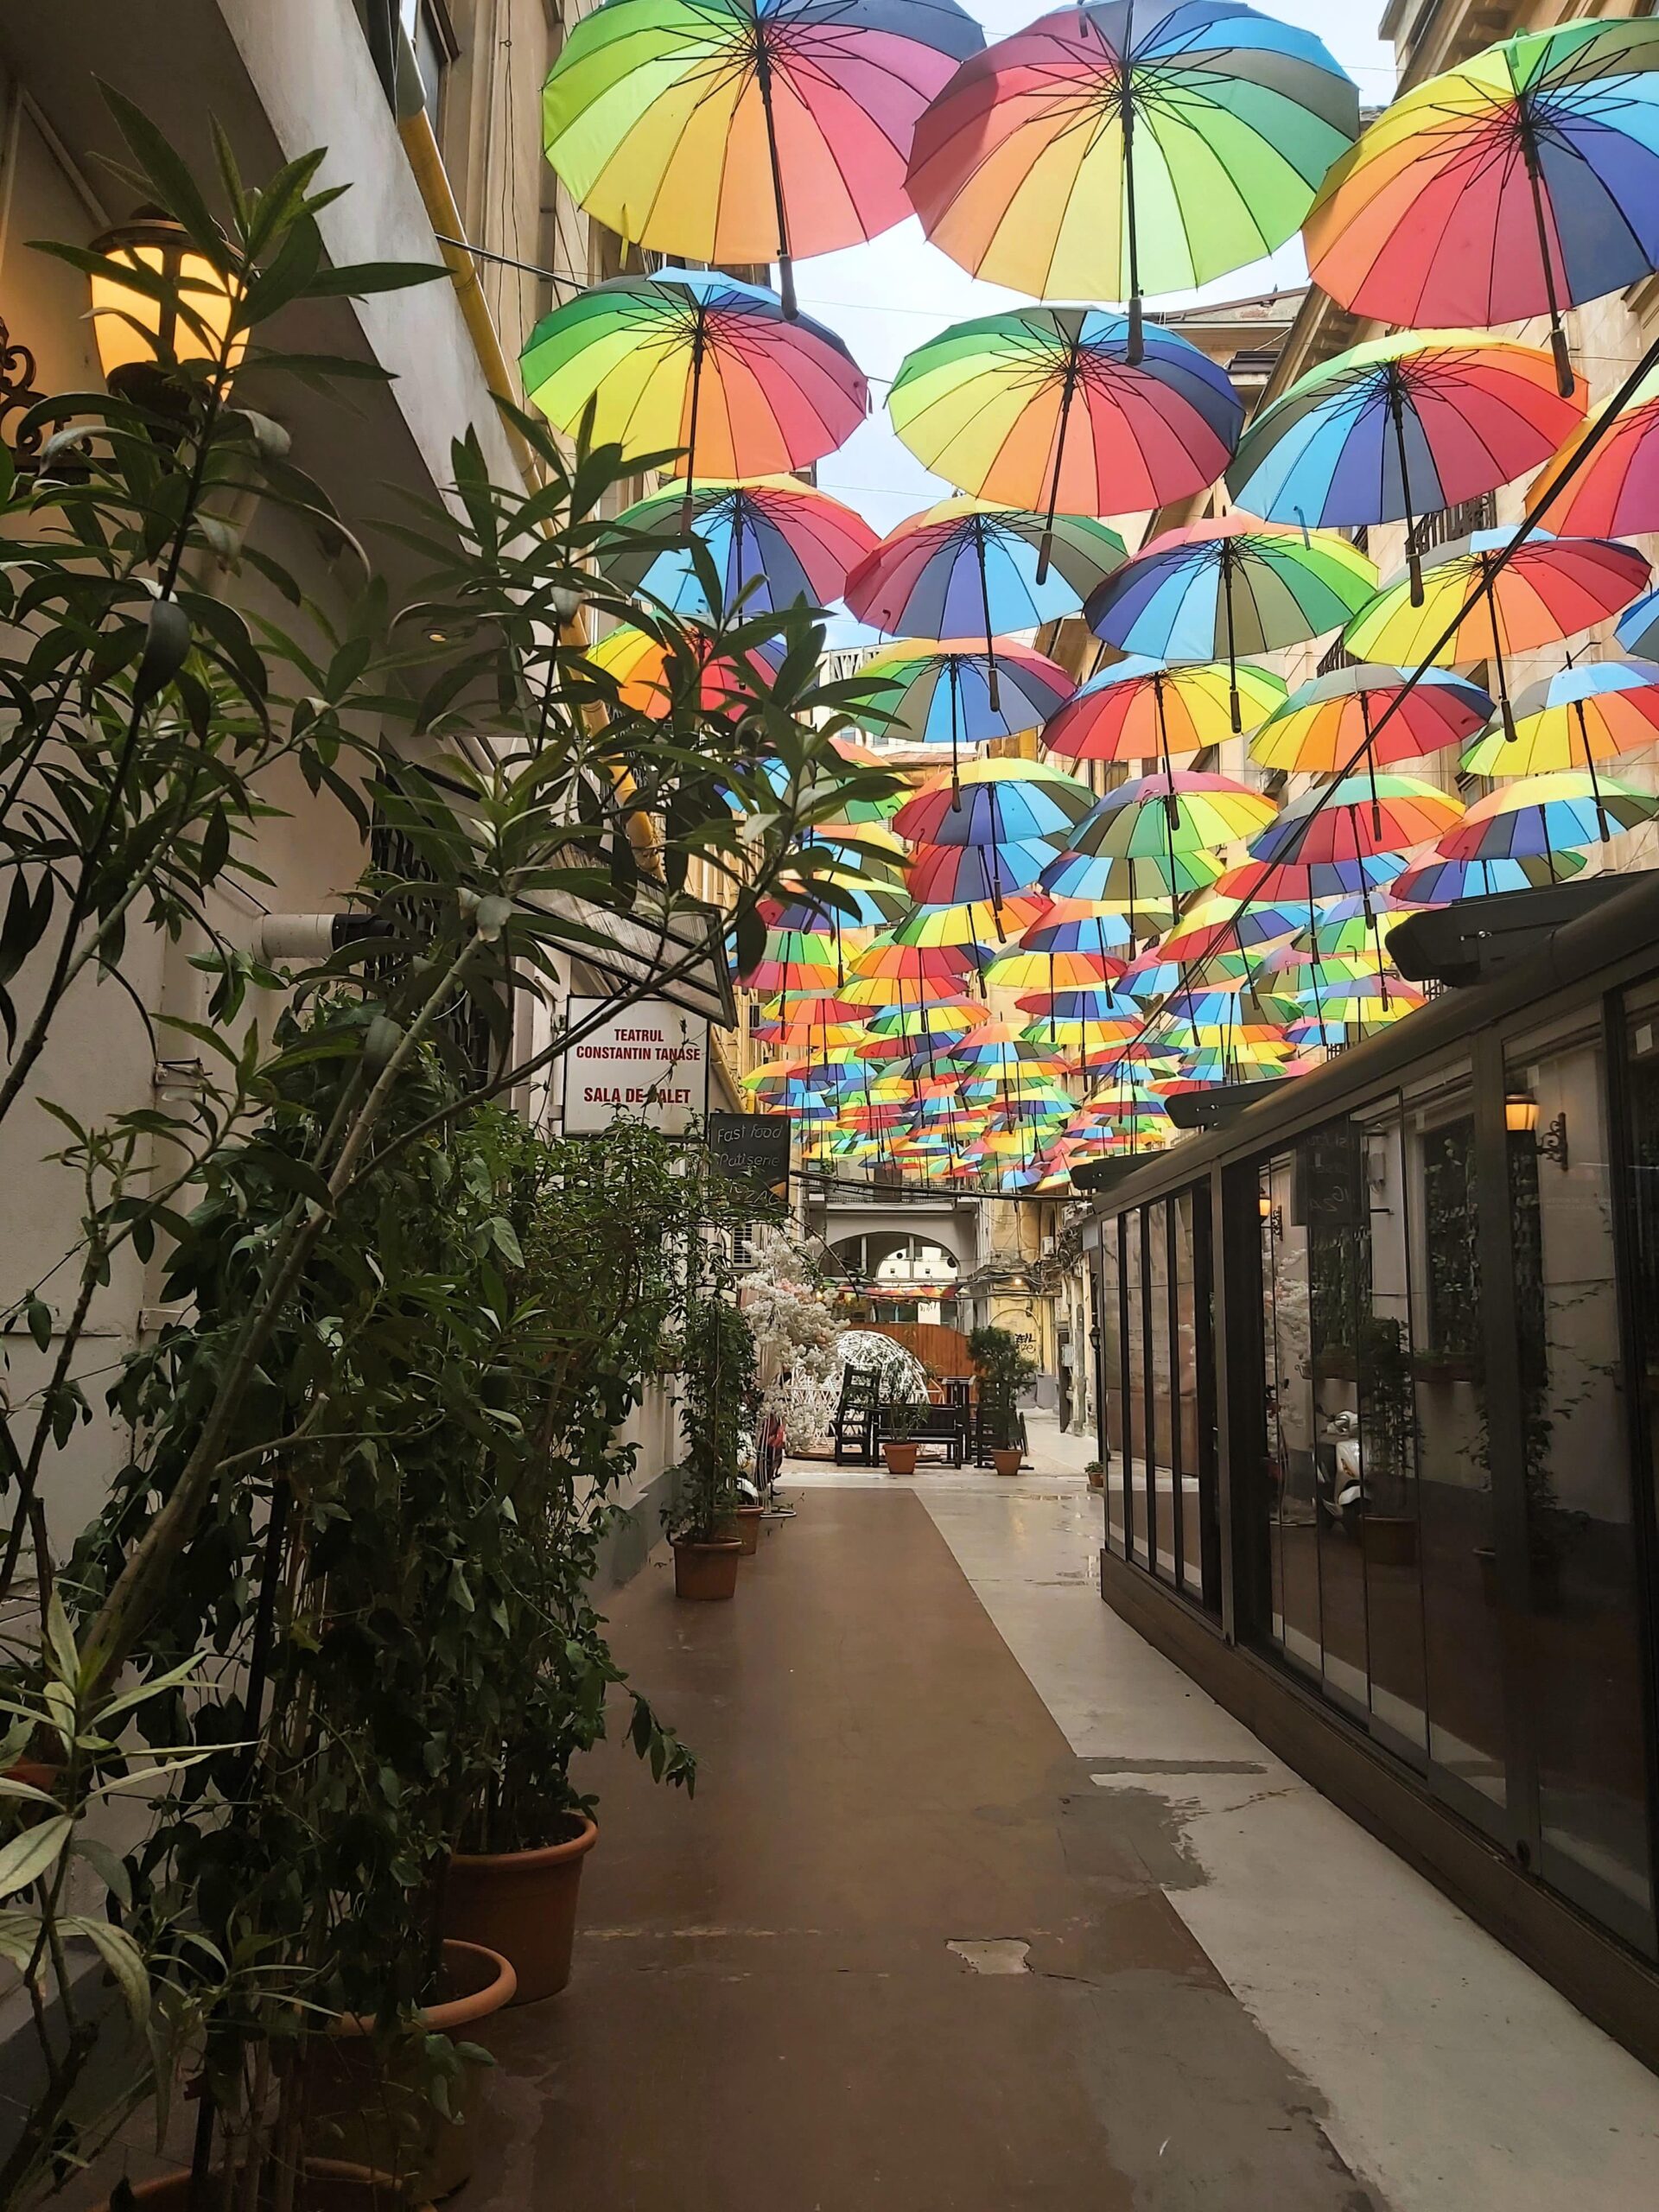 Strada cu Umbrele in București, Romania. A passage with multi-coloured umbrellas hanging above it.